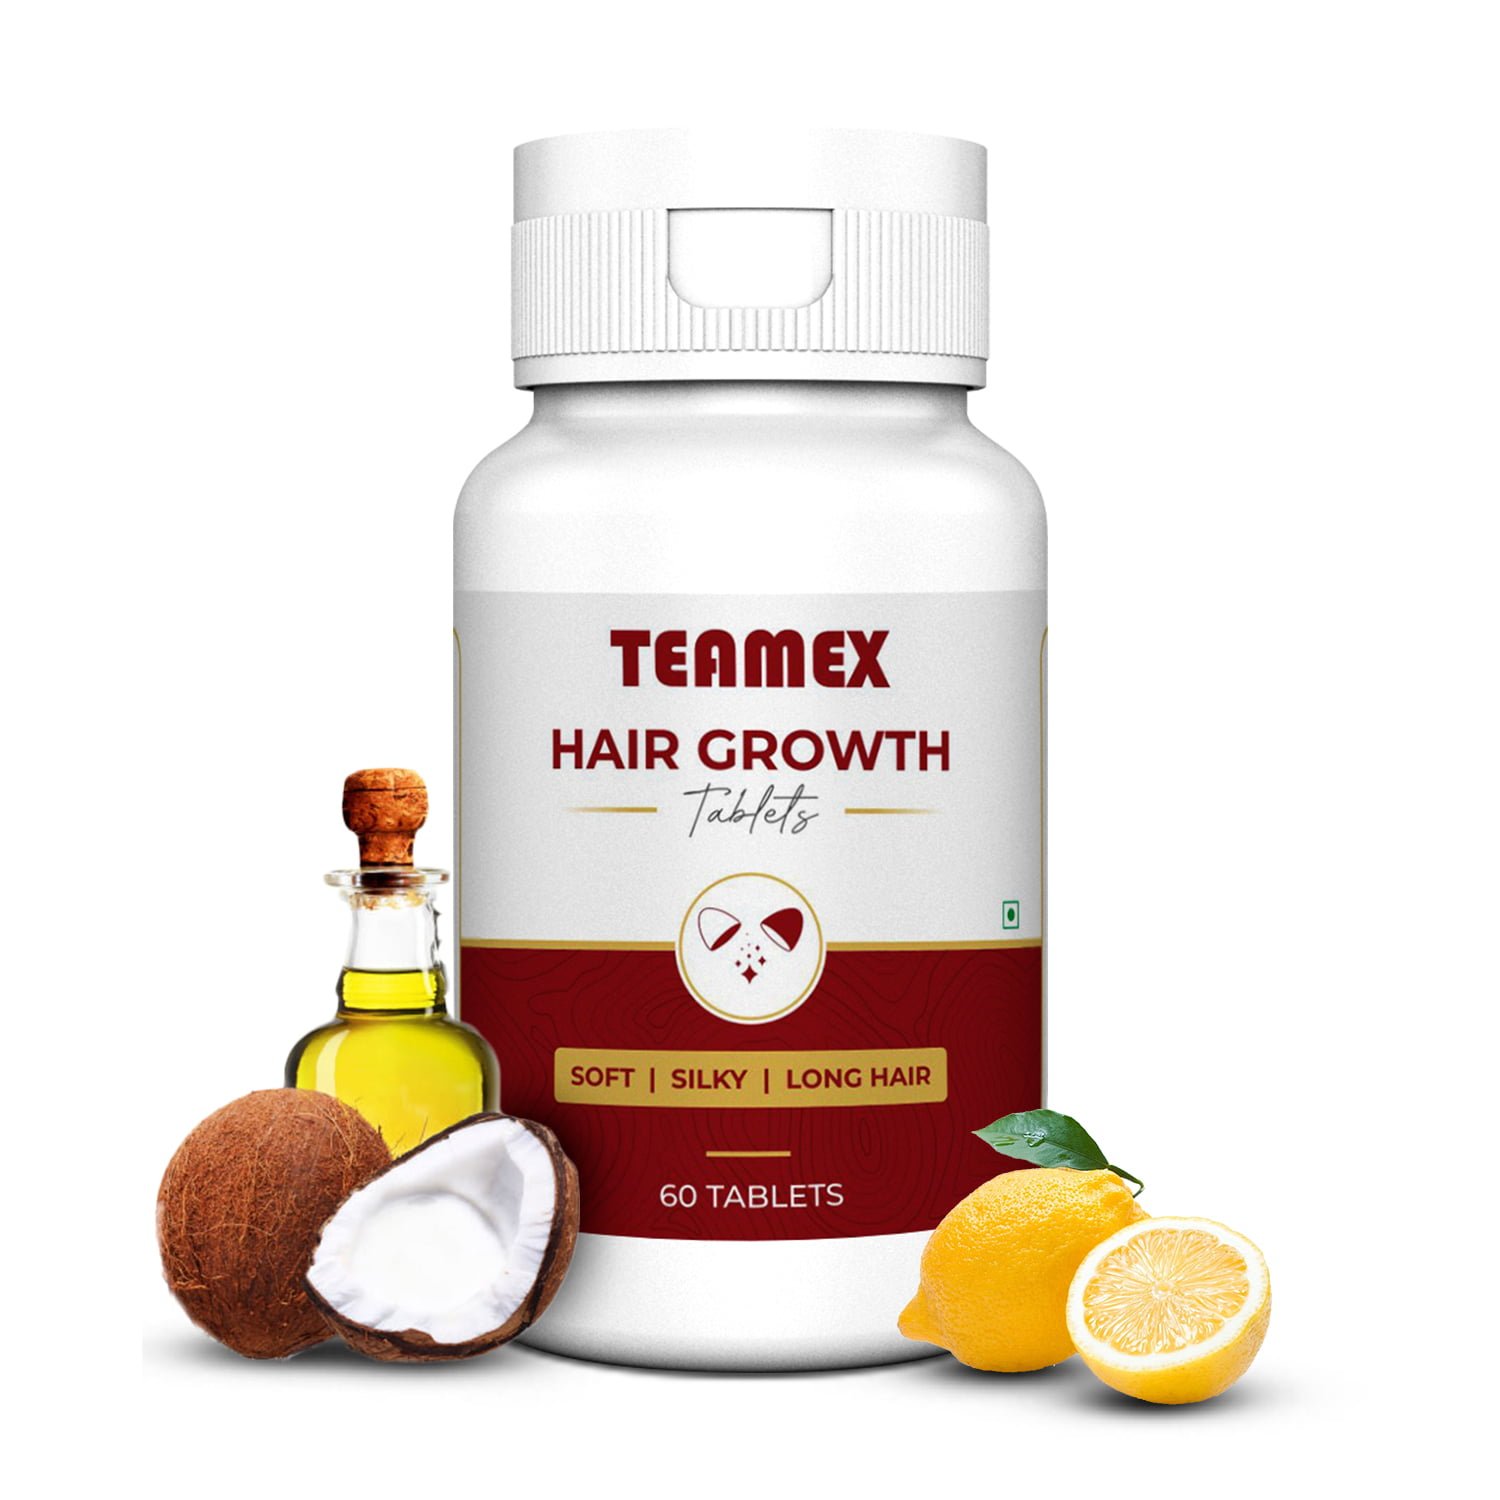 Teamex hair growth tablets